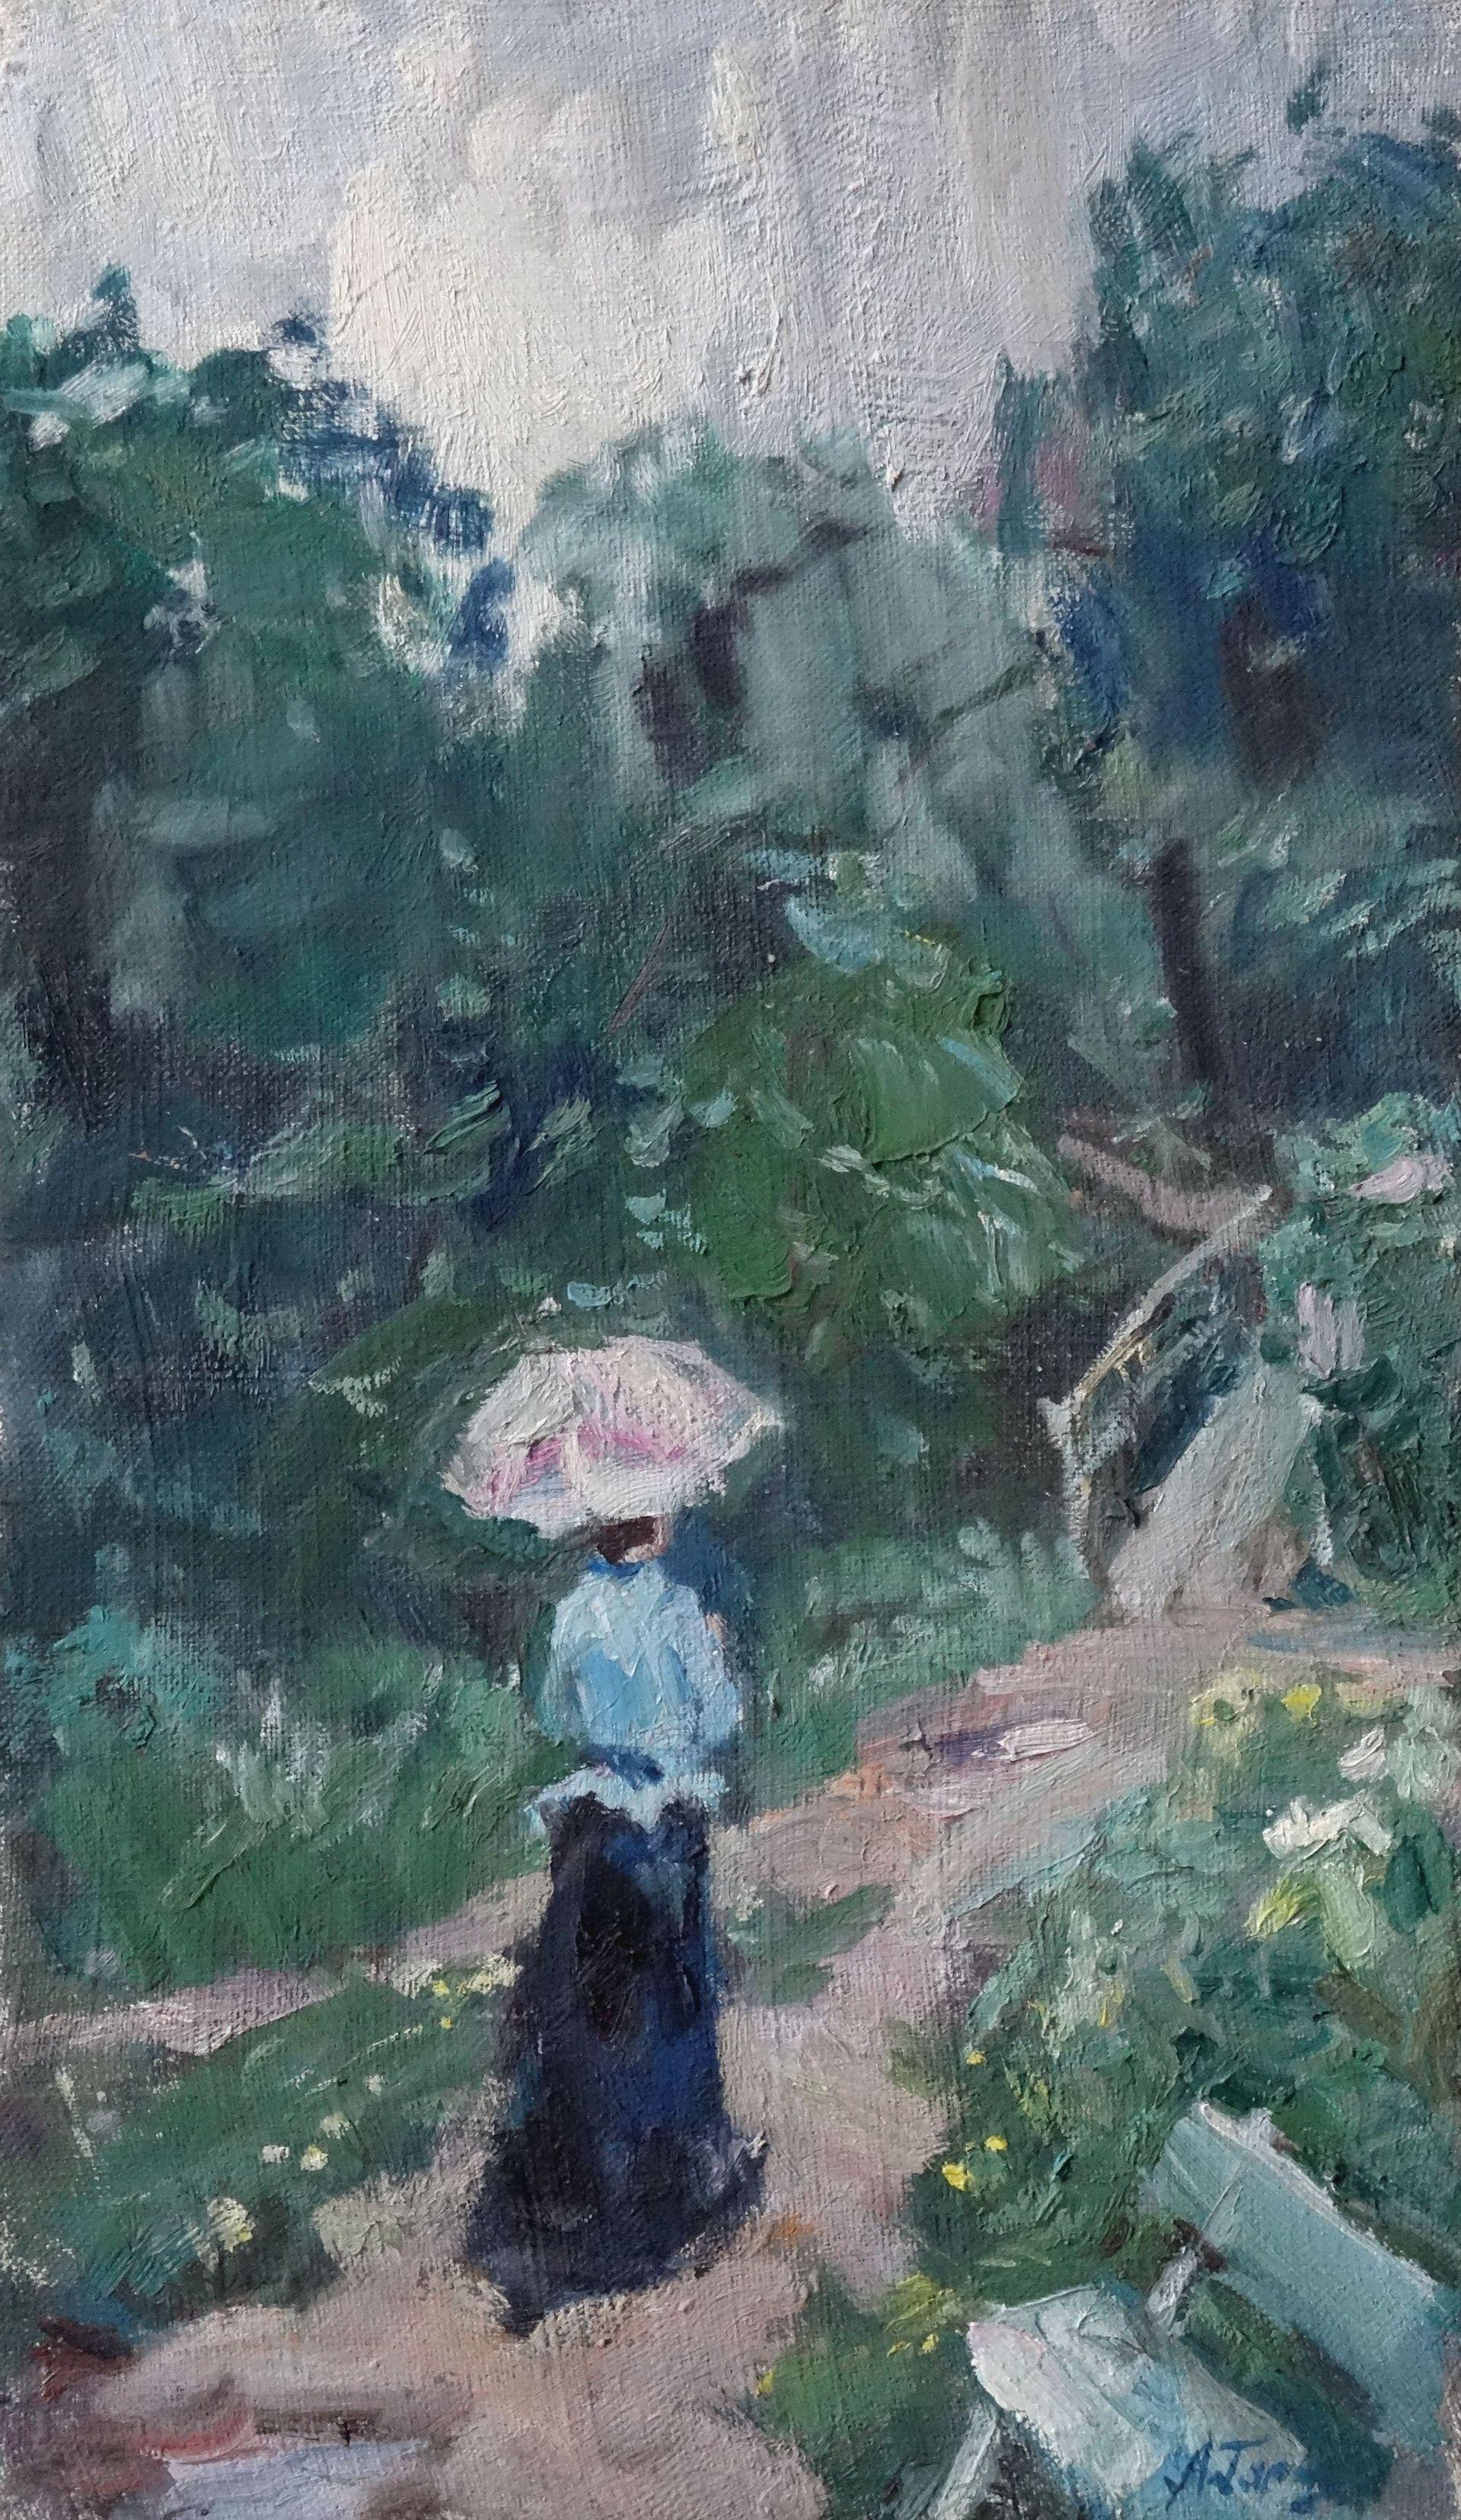 Summer rain. Oil on canvas, 46x27 cm